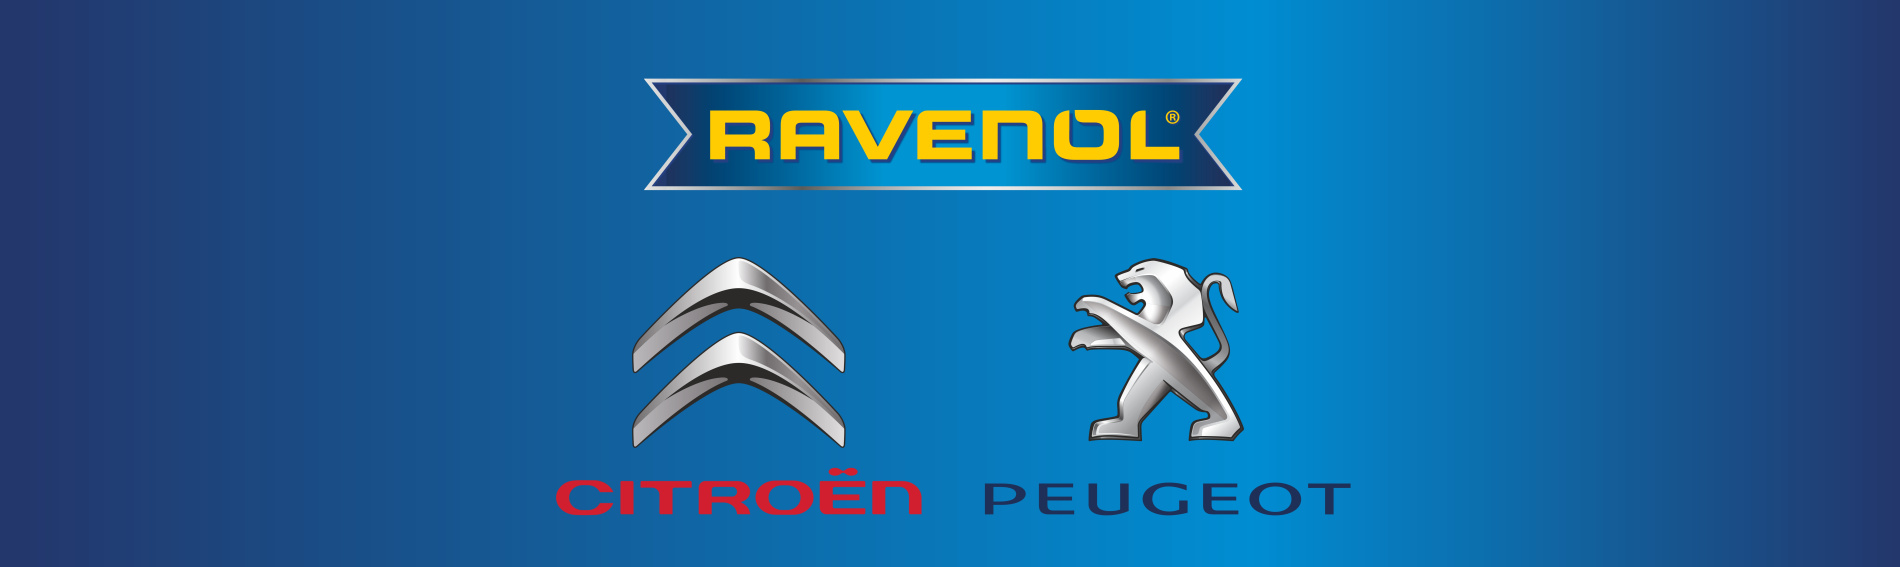 Запущен подбор жидкостей по VIN-коду Citroen, Peugeot